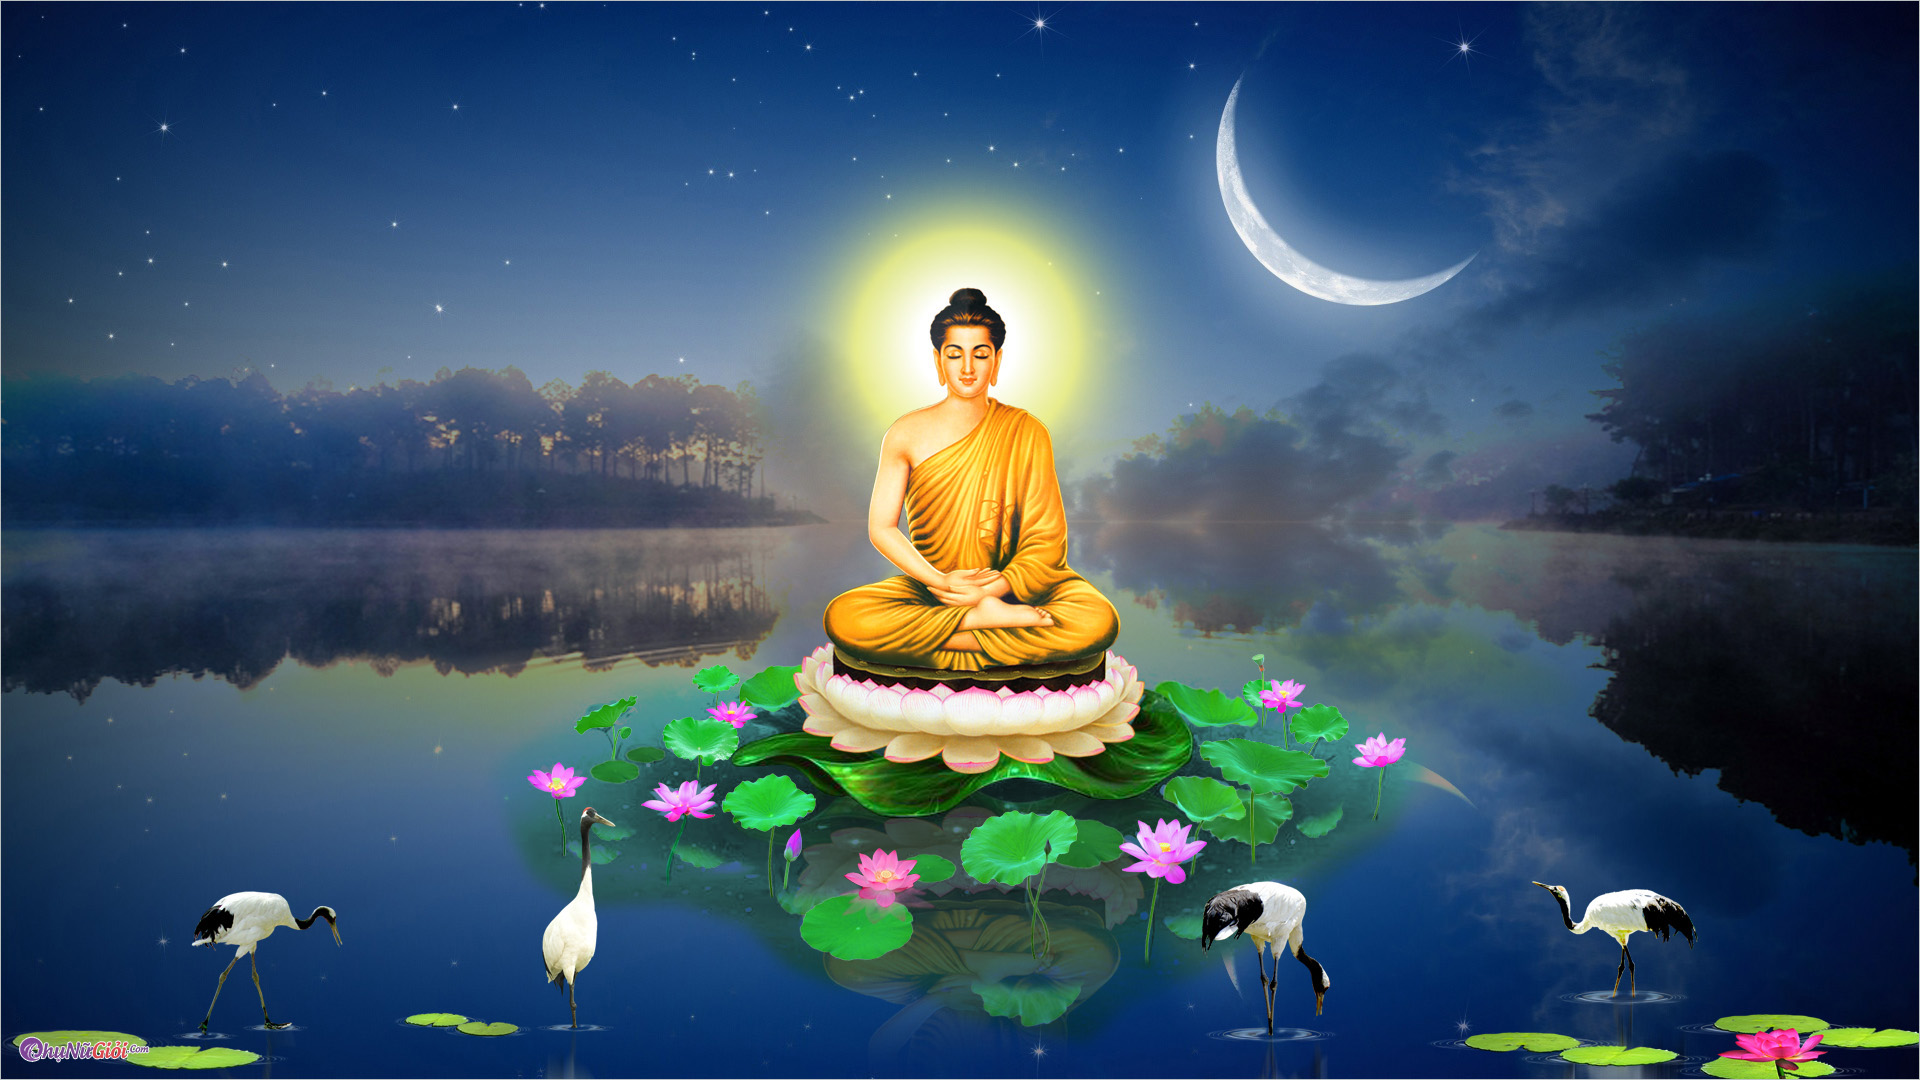 Hãy cùng chiêm ngưỡng bức tranh tôn vinh Phật Thích Ca Mâu Ni - người đã hiến dâng cả đời cho sự giáo dục và phát triển nhân loại. Hình ảnh tượng Phật được vẽ rất chi tiết, mang lại cảm giác tôn nghiêm và thanh tịnh.